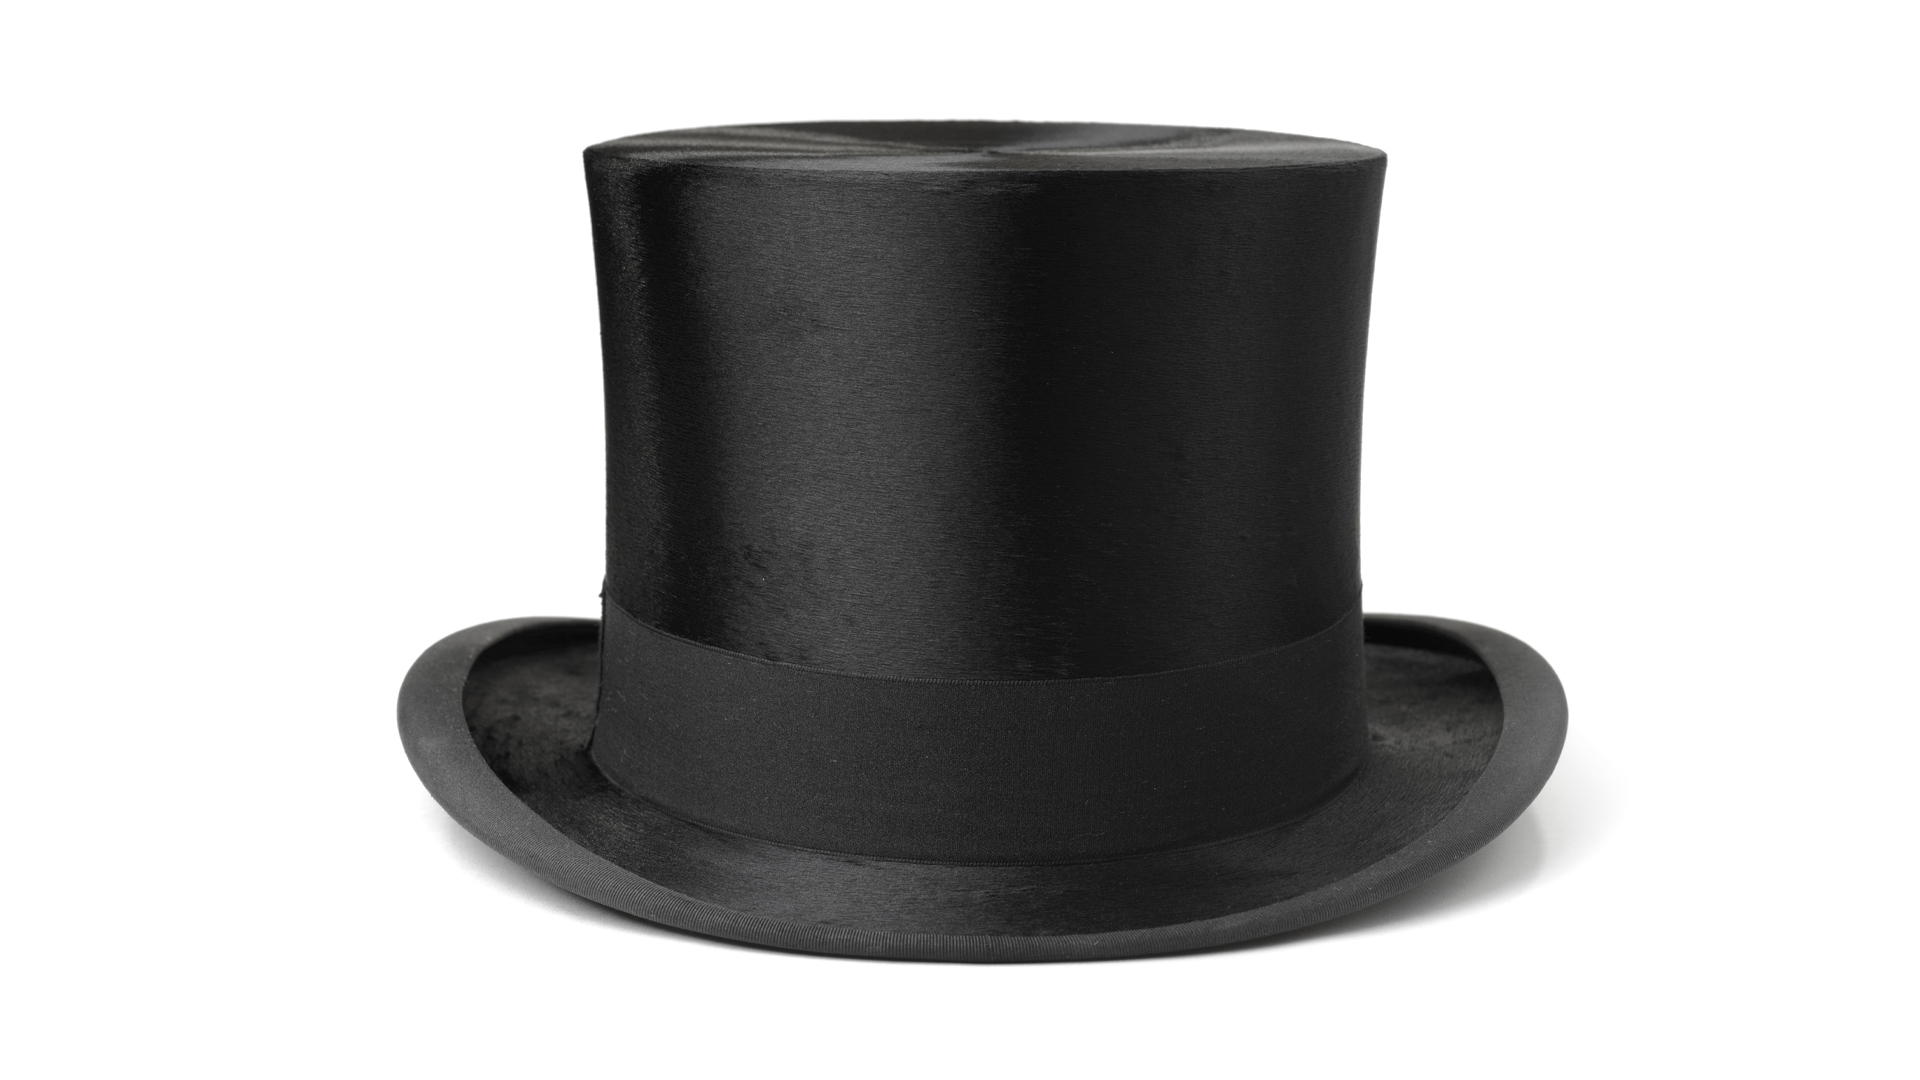 A fancy top hat